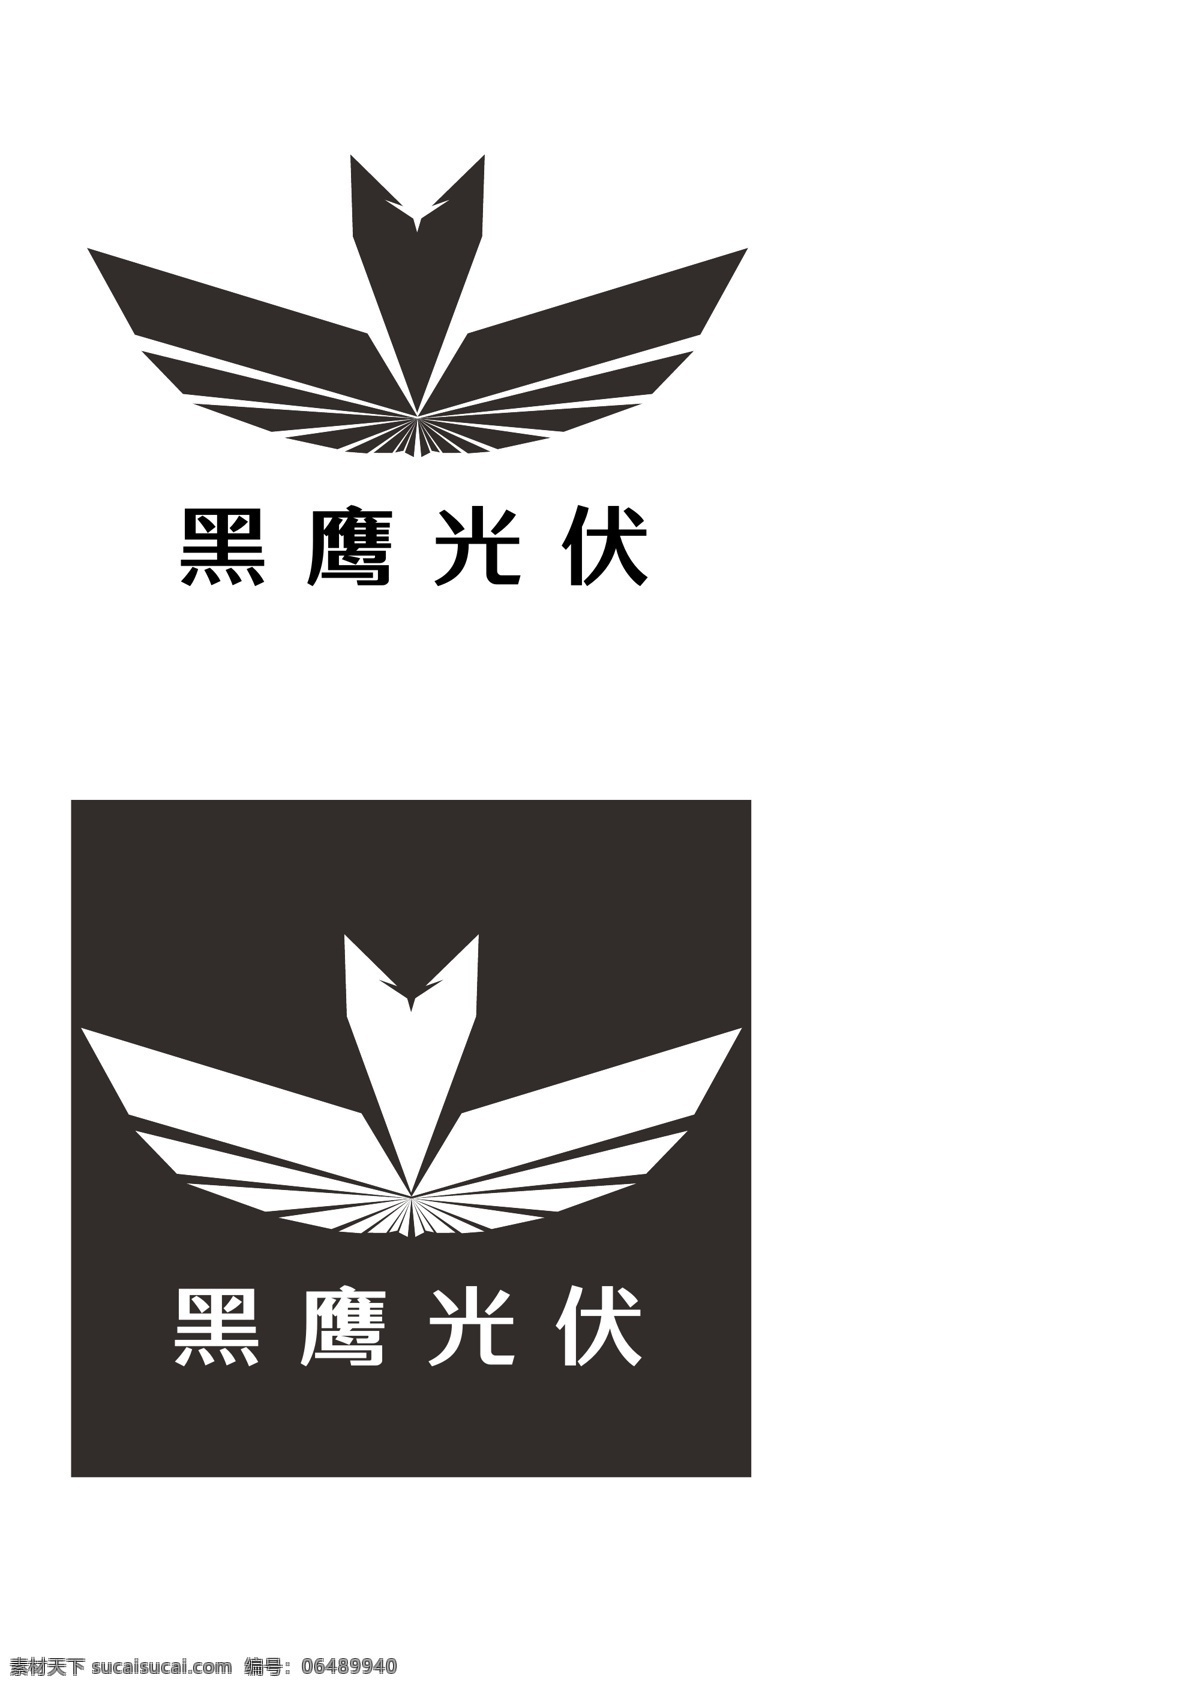 黑鹰 logo 简约 模板 logo设计 标志 时尚 金属 鹰